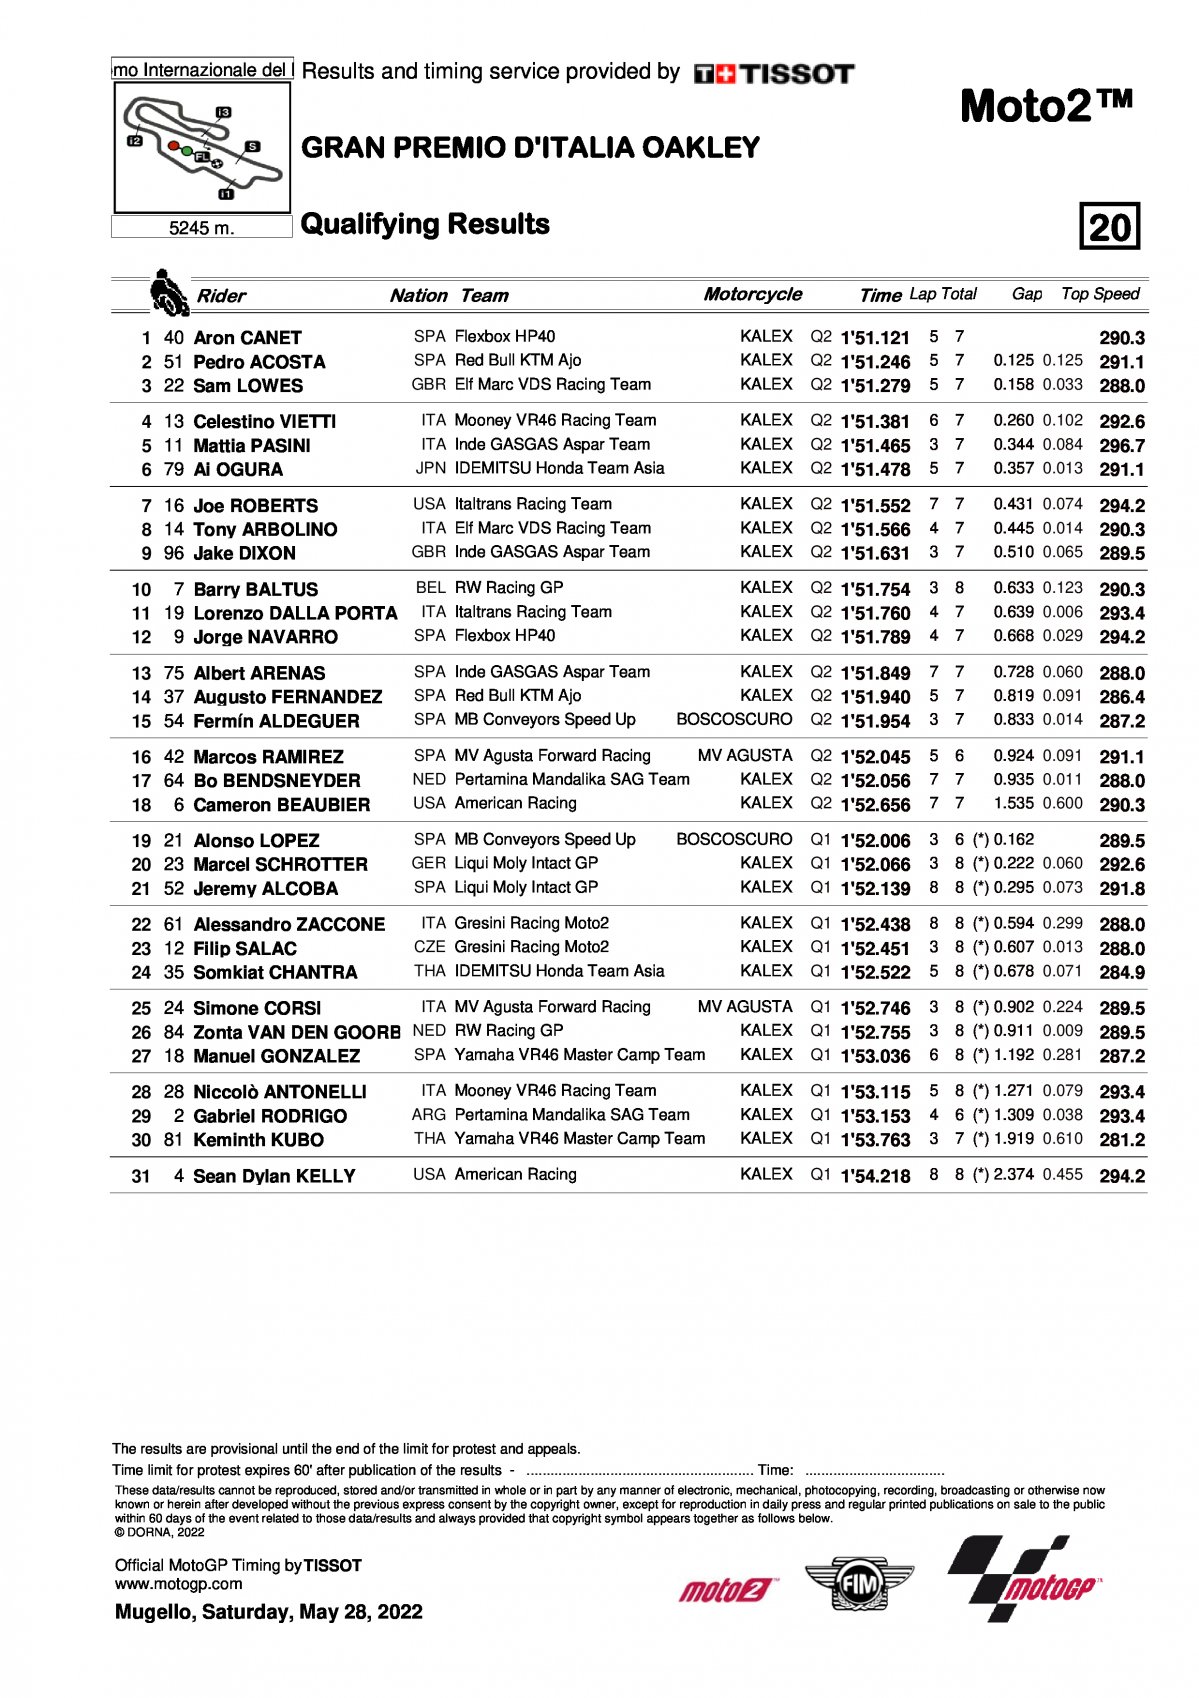 Результаты квалификации Гран-При Италии Moto2 (28/05/2022)